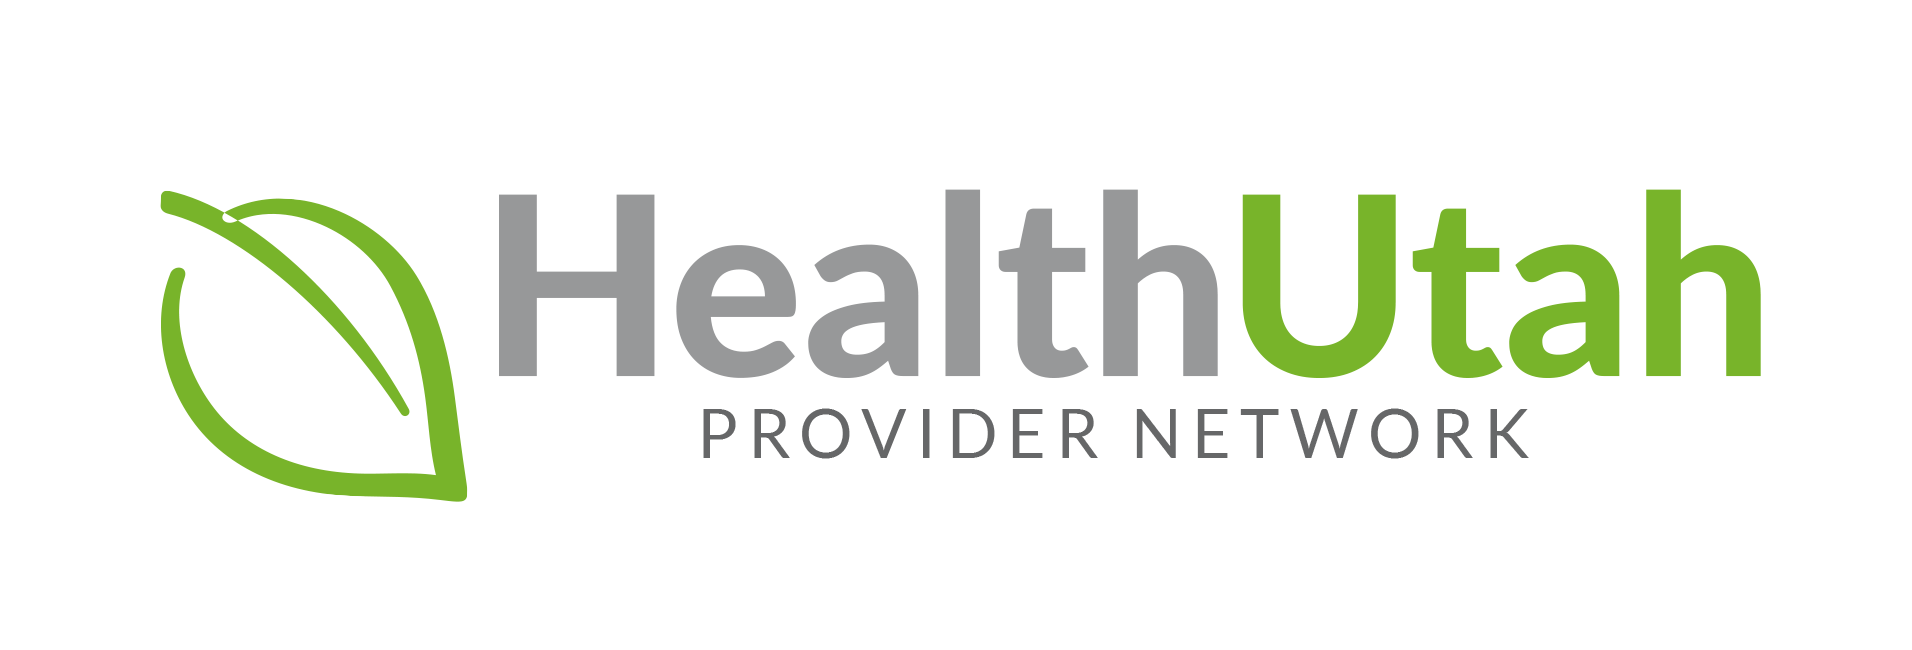 healthutah-network-logo